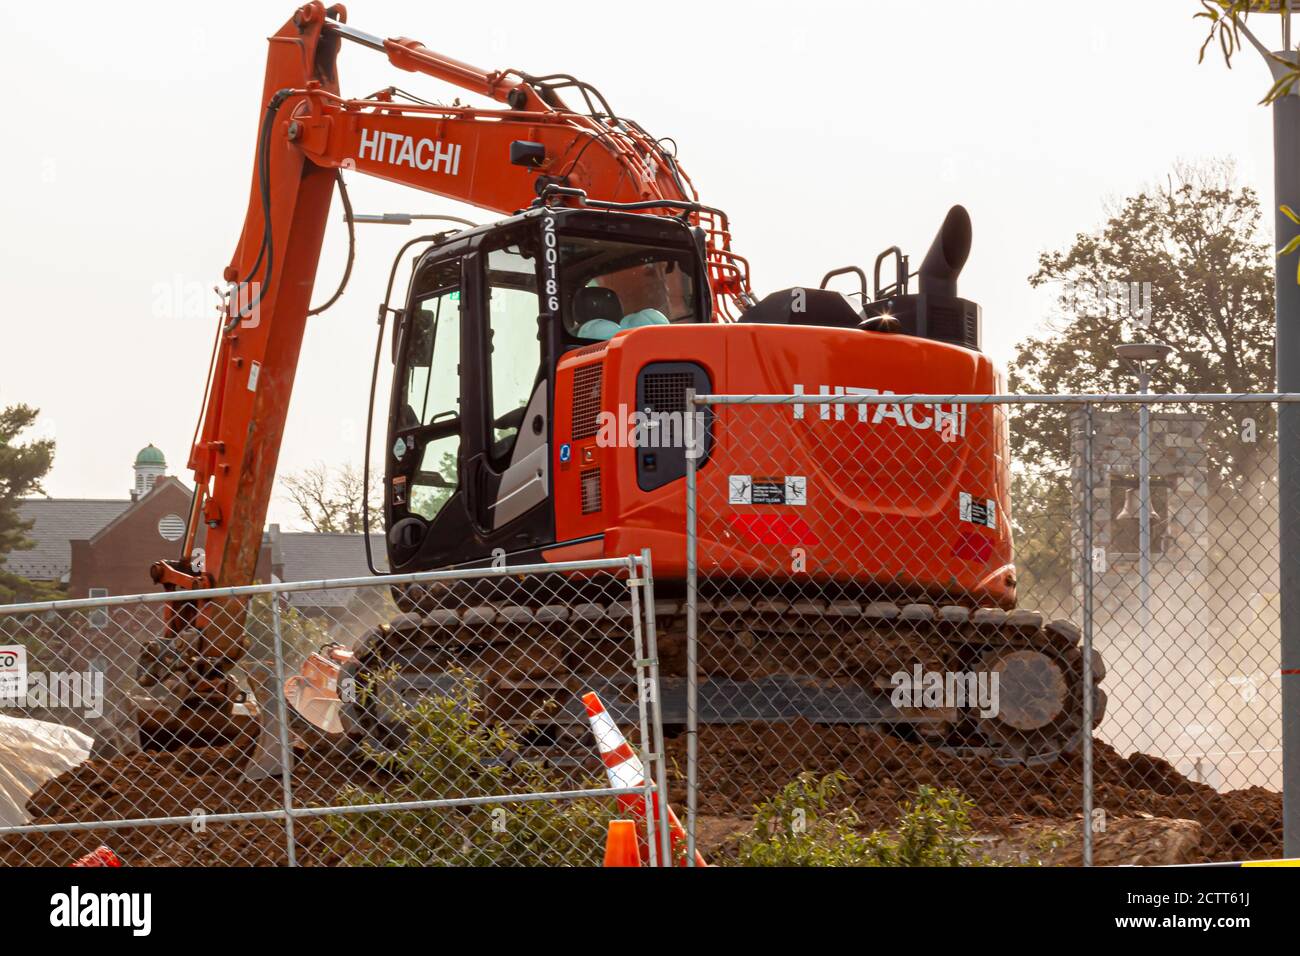 Bethesda, MD, USA 09/12/2020: Blick auf eine Baustelle, während die Arbeitsmaschinen arbeiten. Das Bild zeigt einen roten Hitachi Bagger dahinter Stockfoto